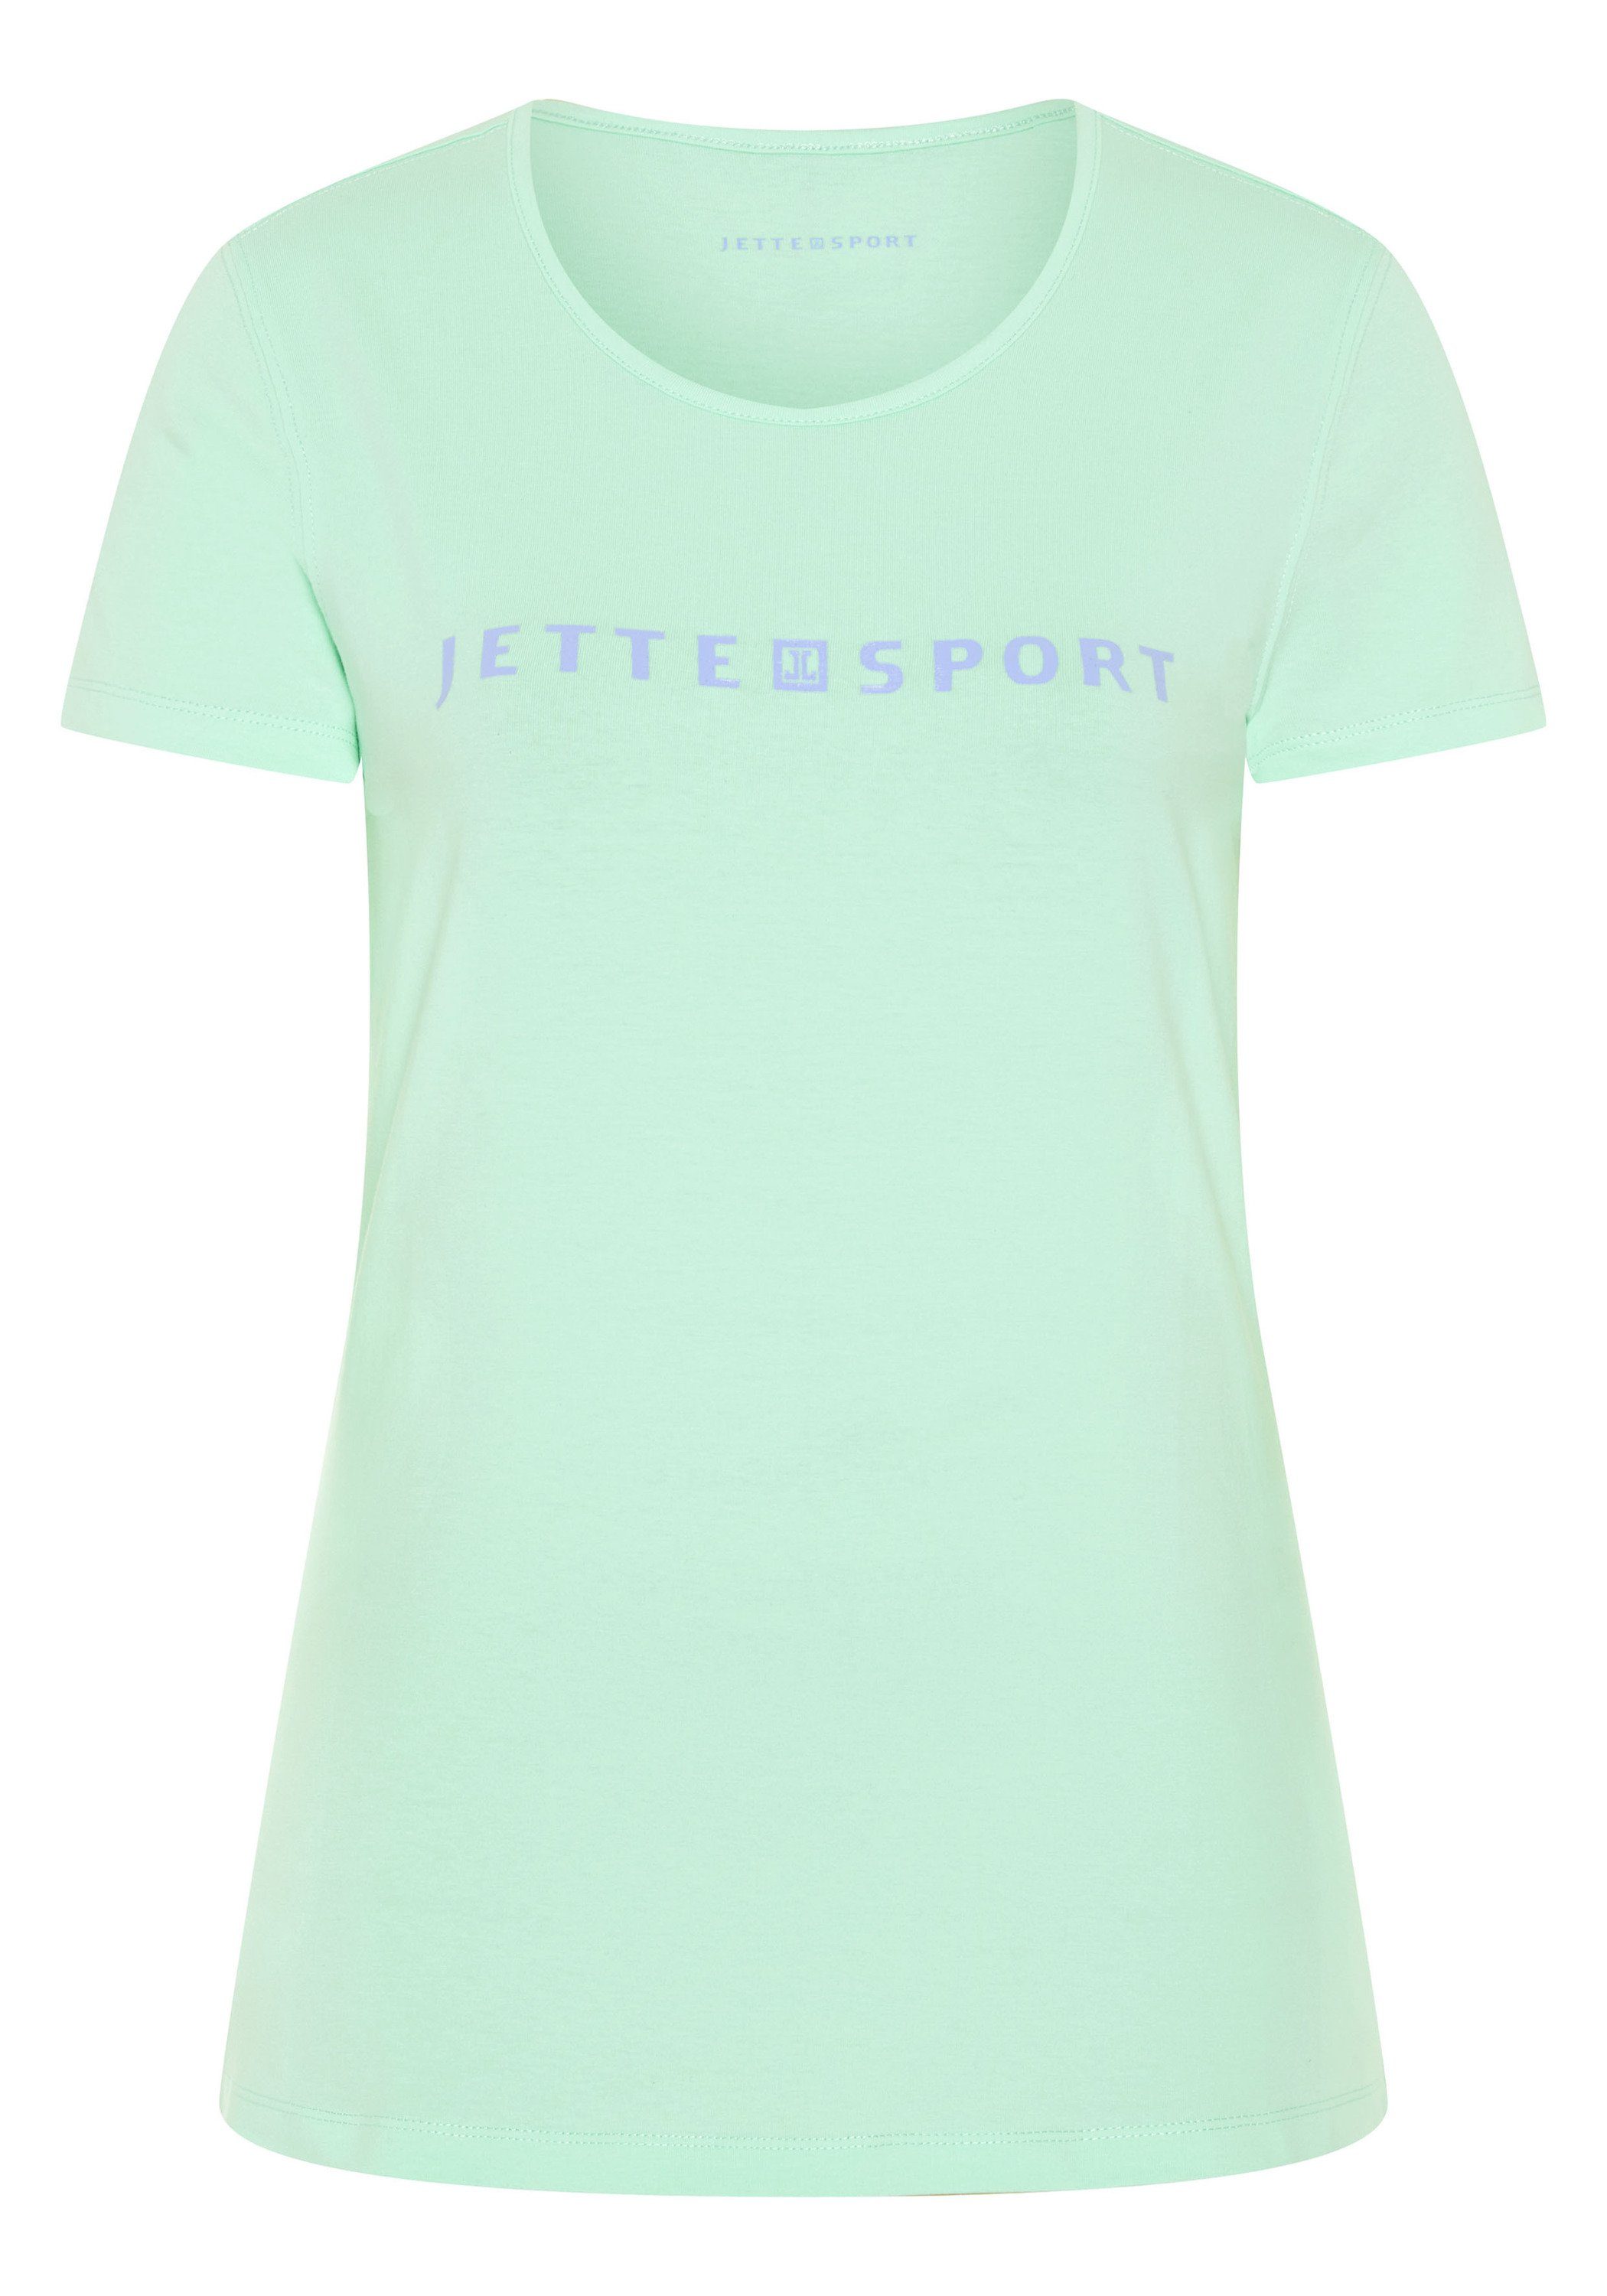 JETTE SPORT Print-Shirt mit Labelprint